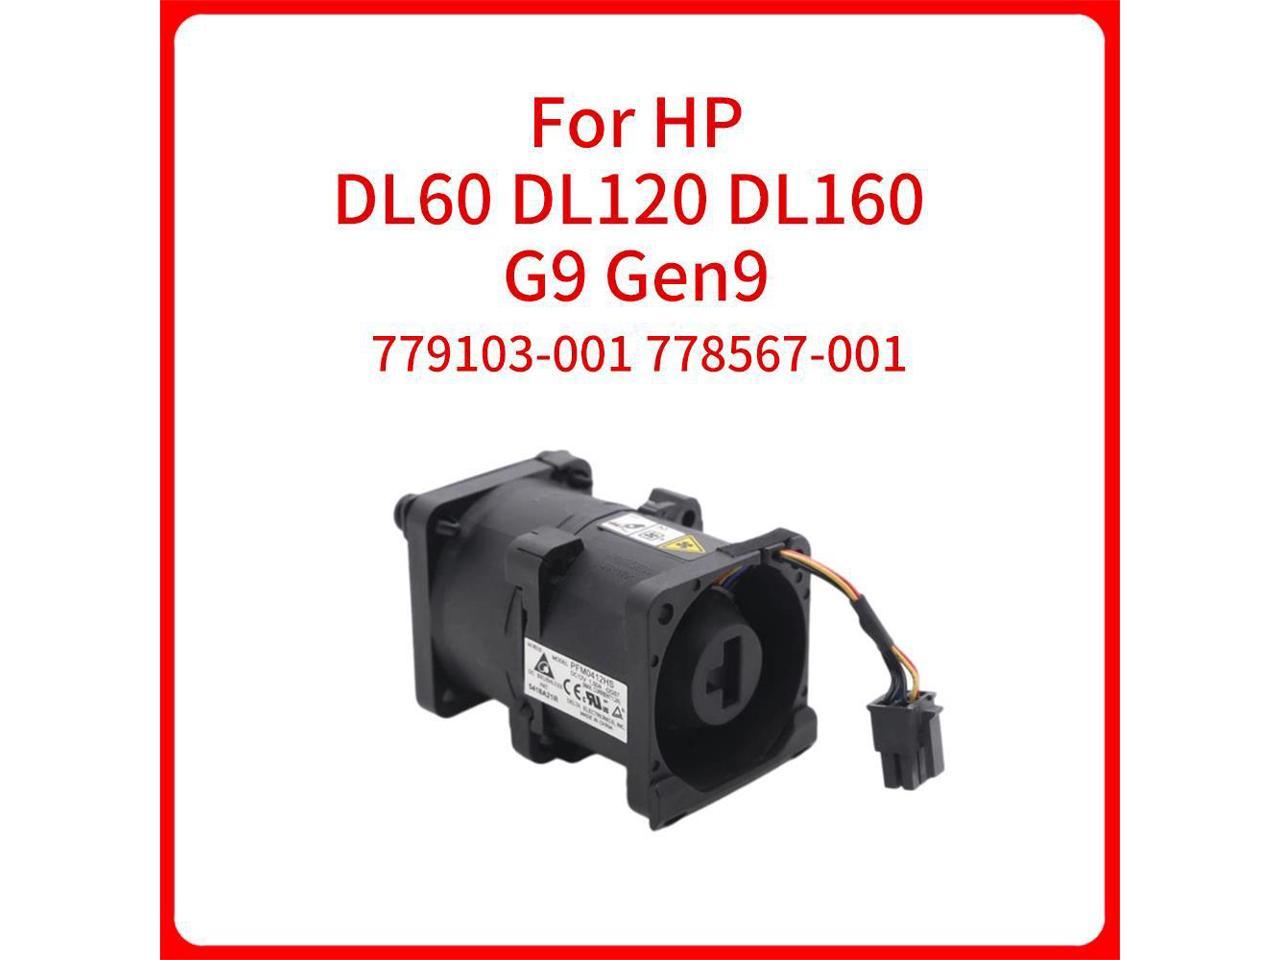 HP DL160 DL60/DL120 Gen9 768753-001 779103-001 778567-001 Server Fan USA SHIP 